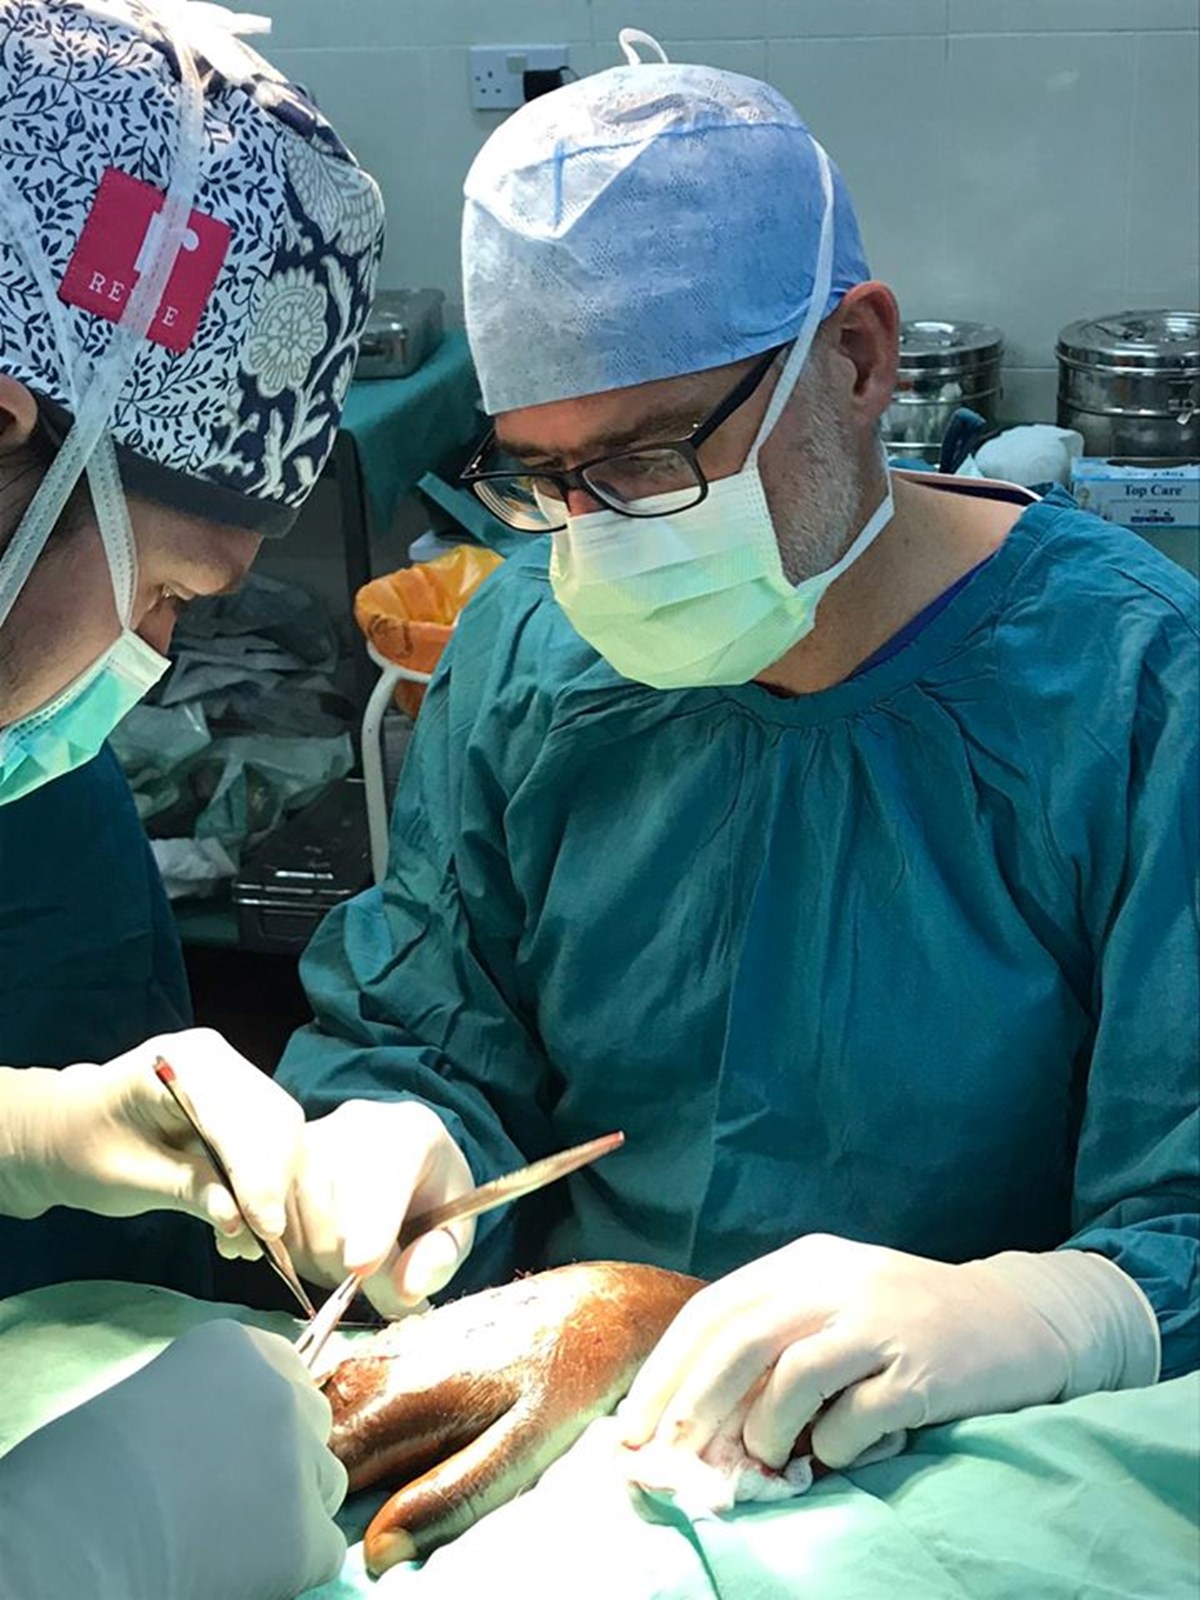 Dott. Gardetto é uno dei piú bravi chirurghi plastici e fa parte del team della clinica privata Brixsana